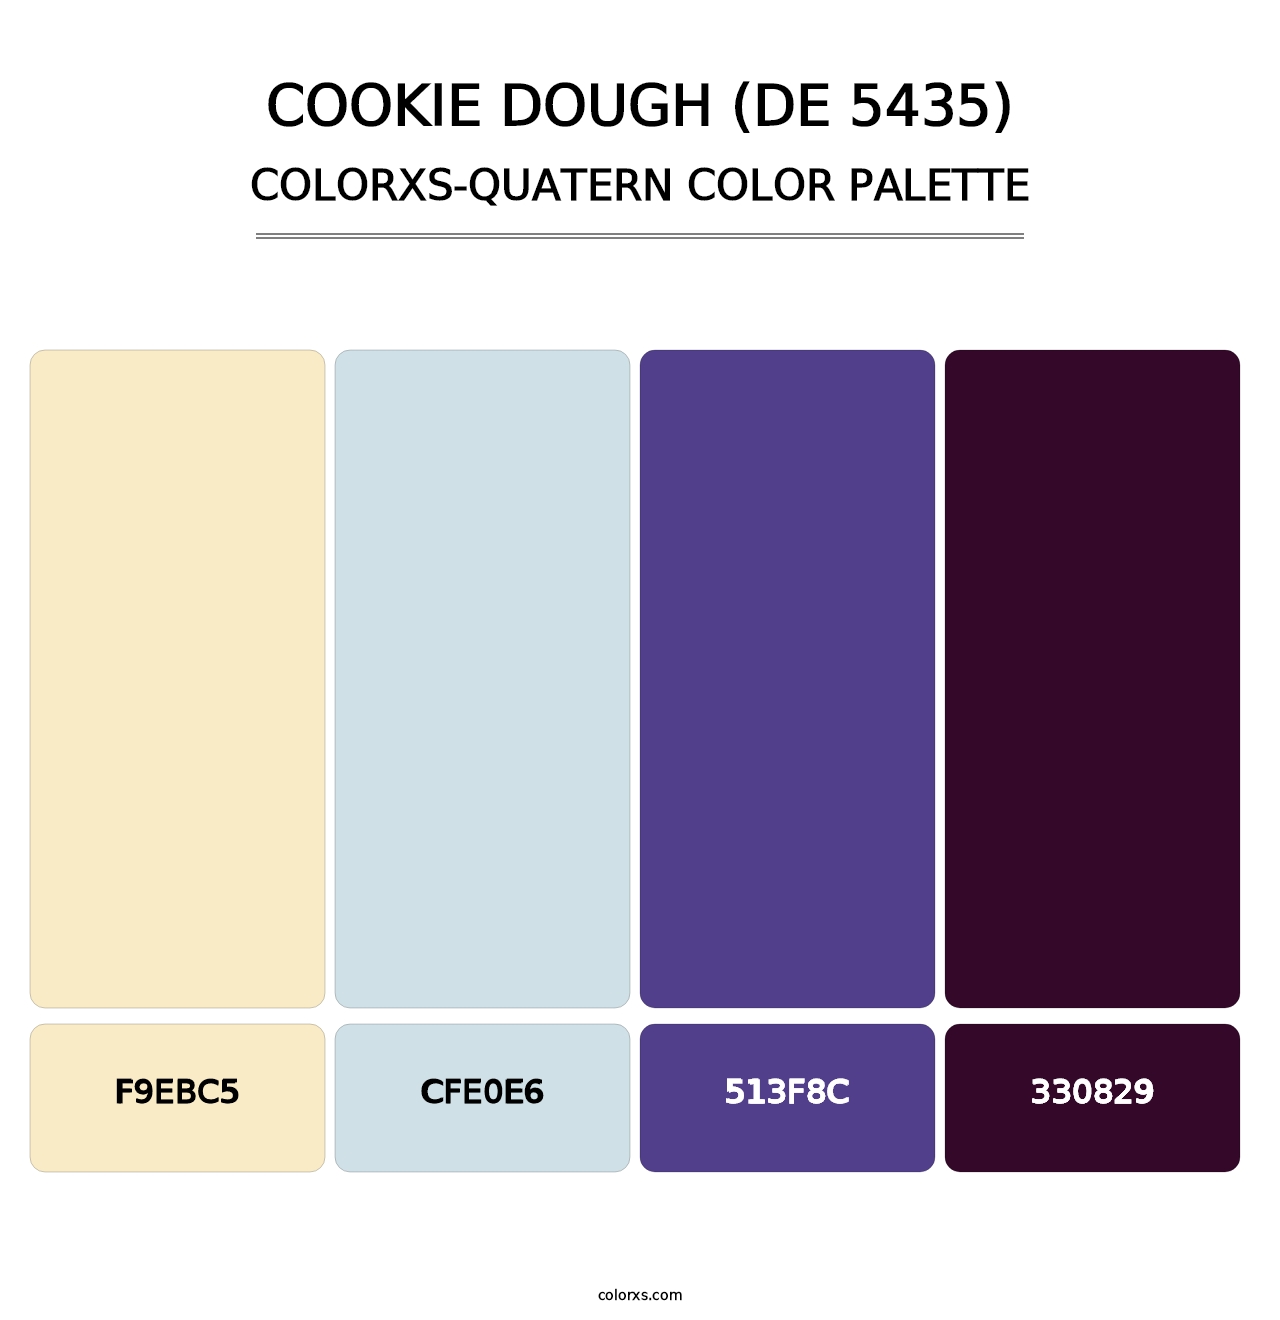 Cookie Dough (DE 5435) - Colorxs Quatern Palette